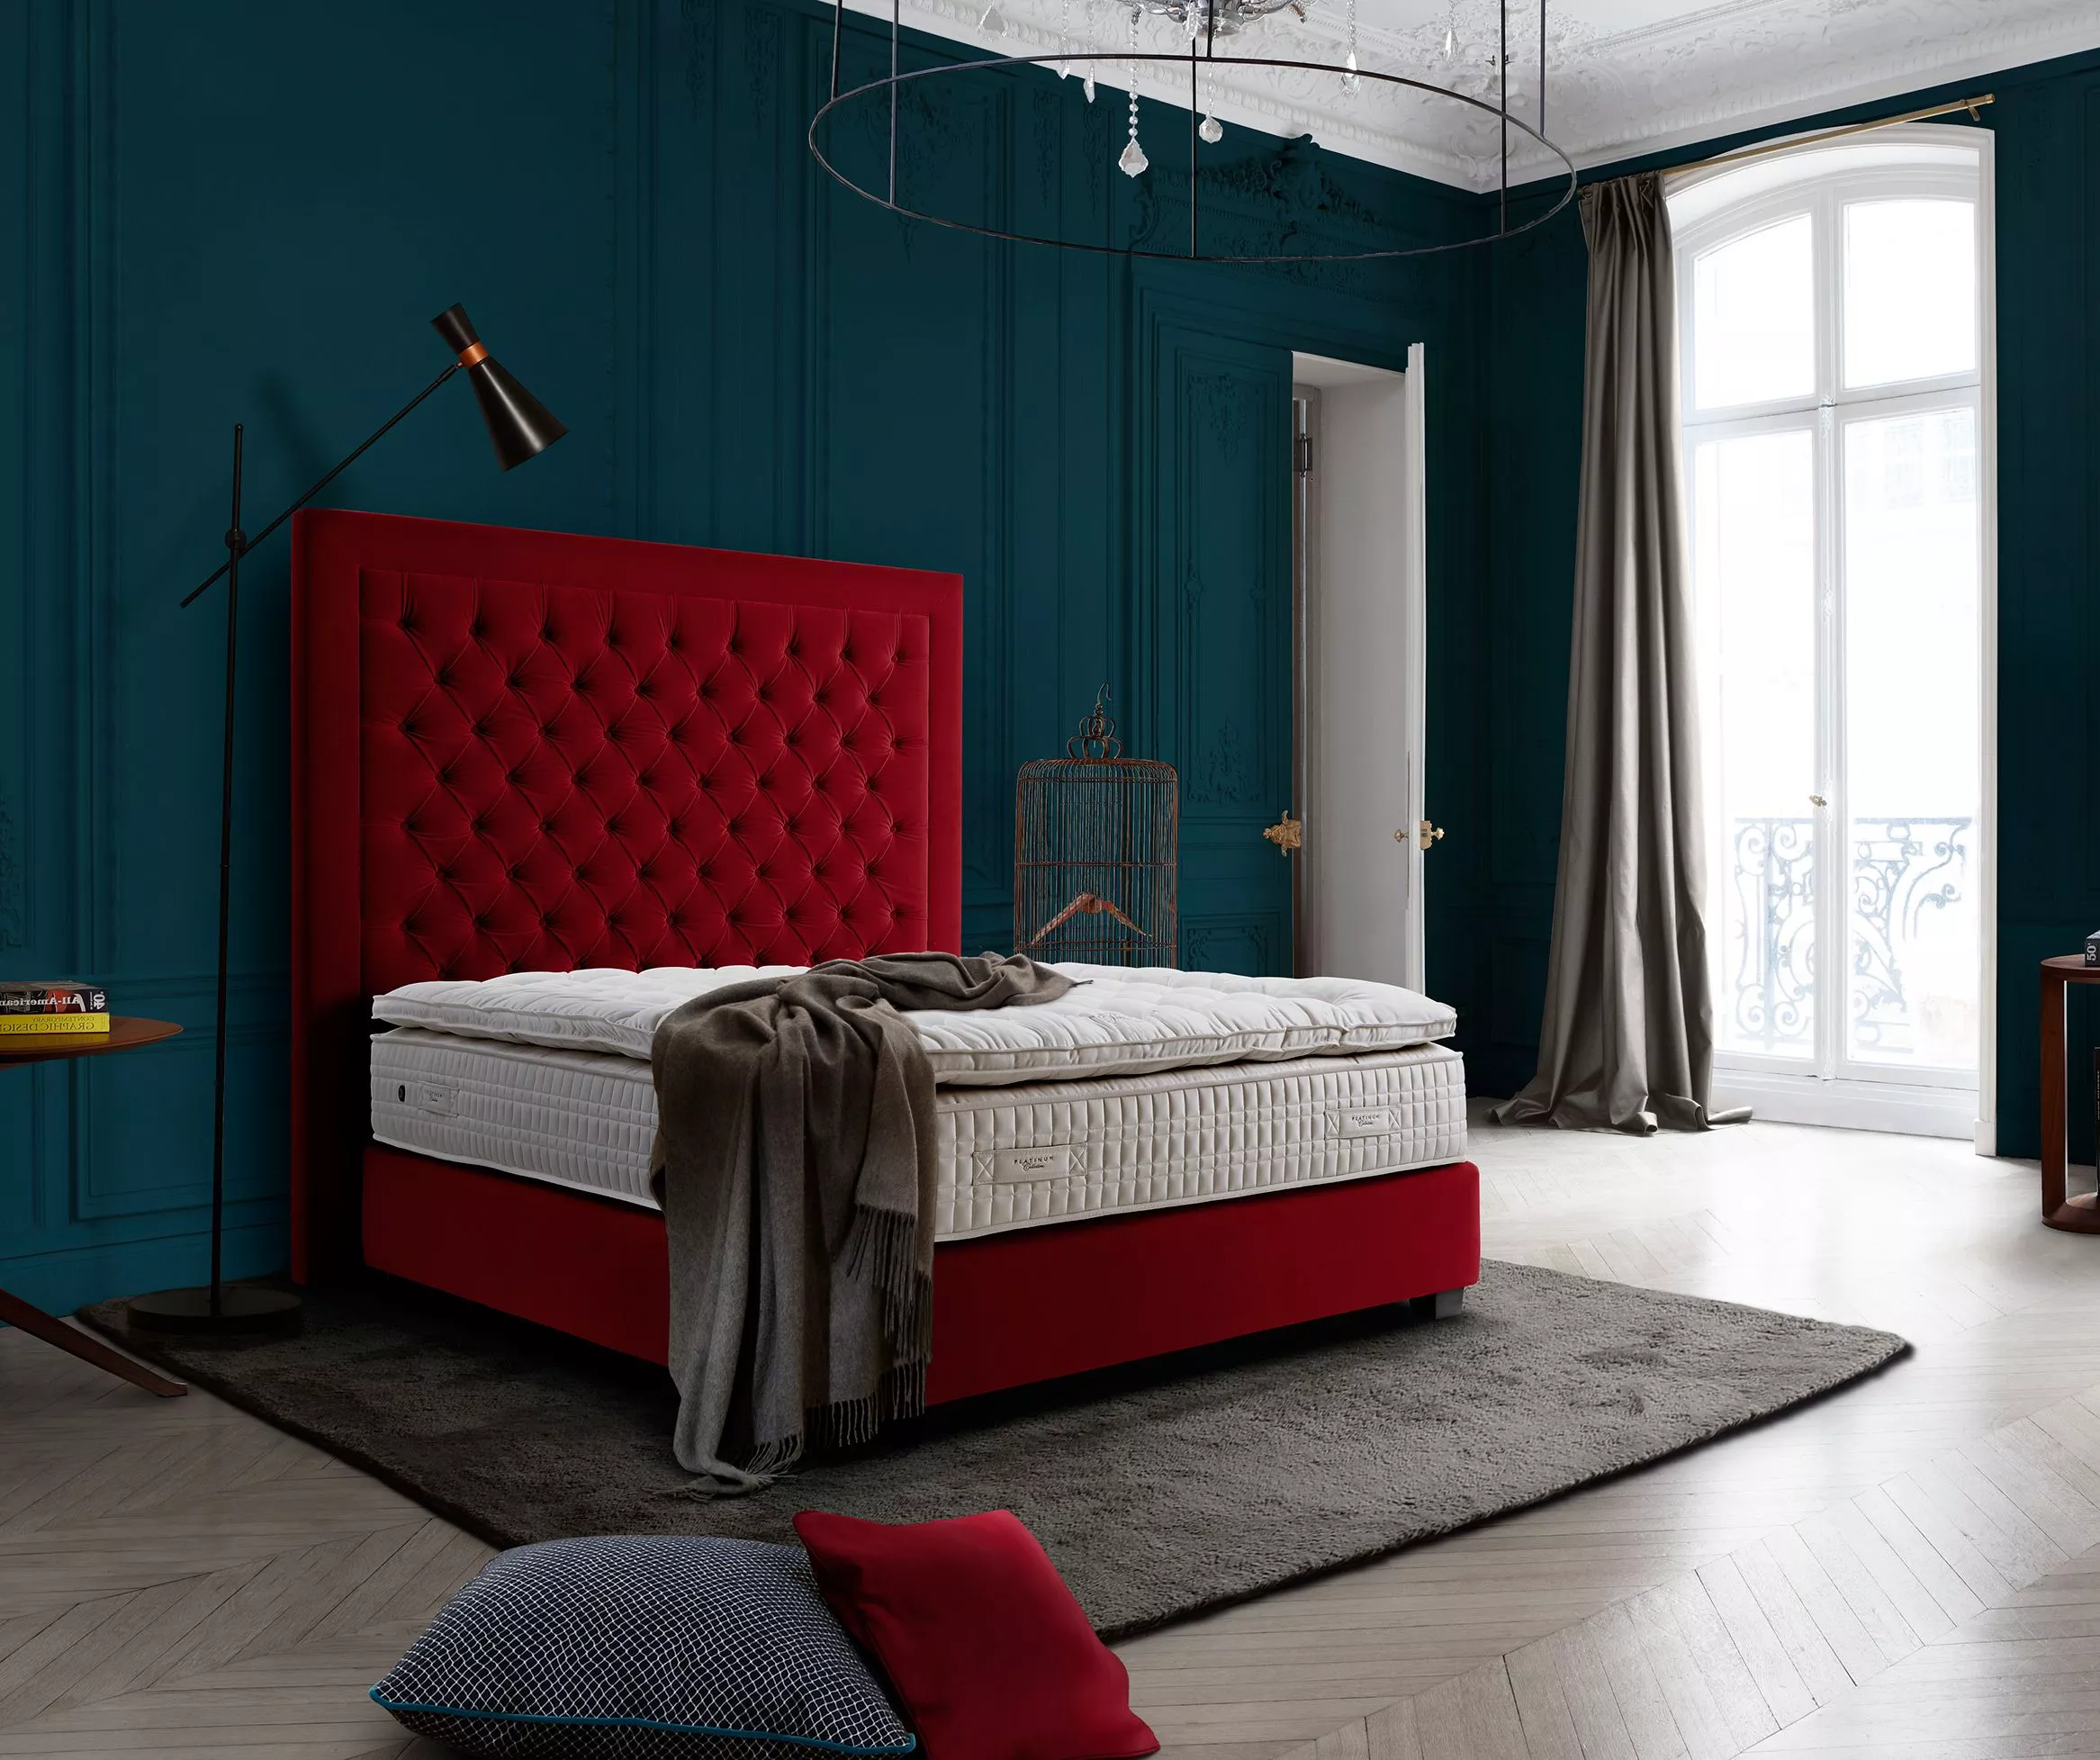 سرویس تخت خواب چستر قرمز رنگ وبلاگ مبل باروس